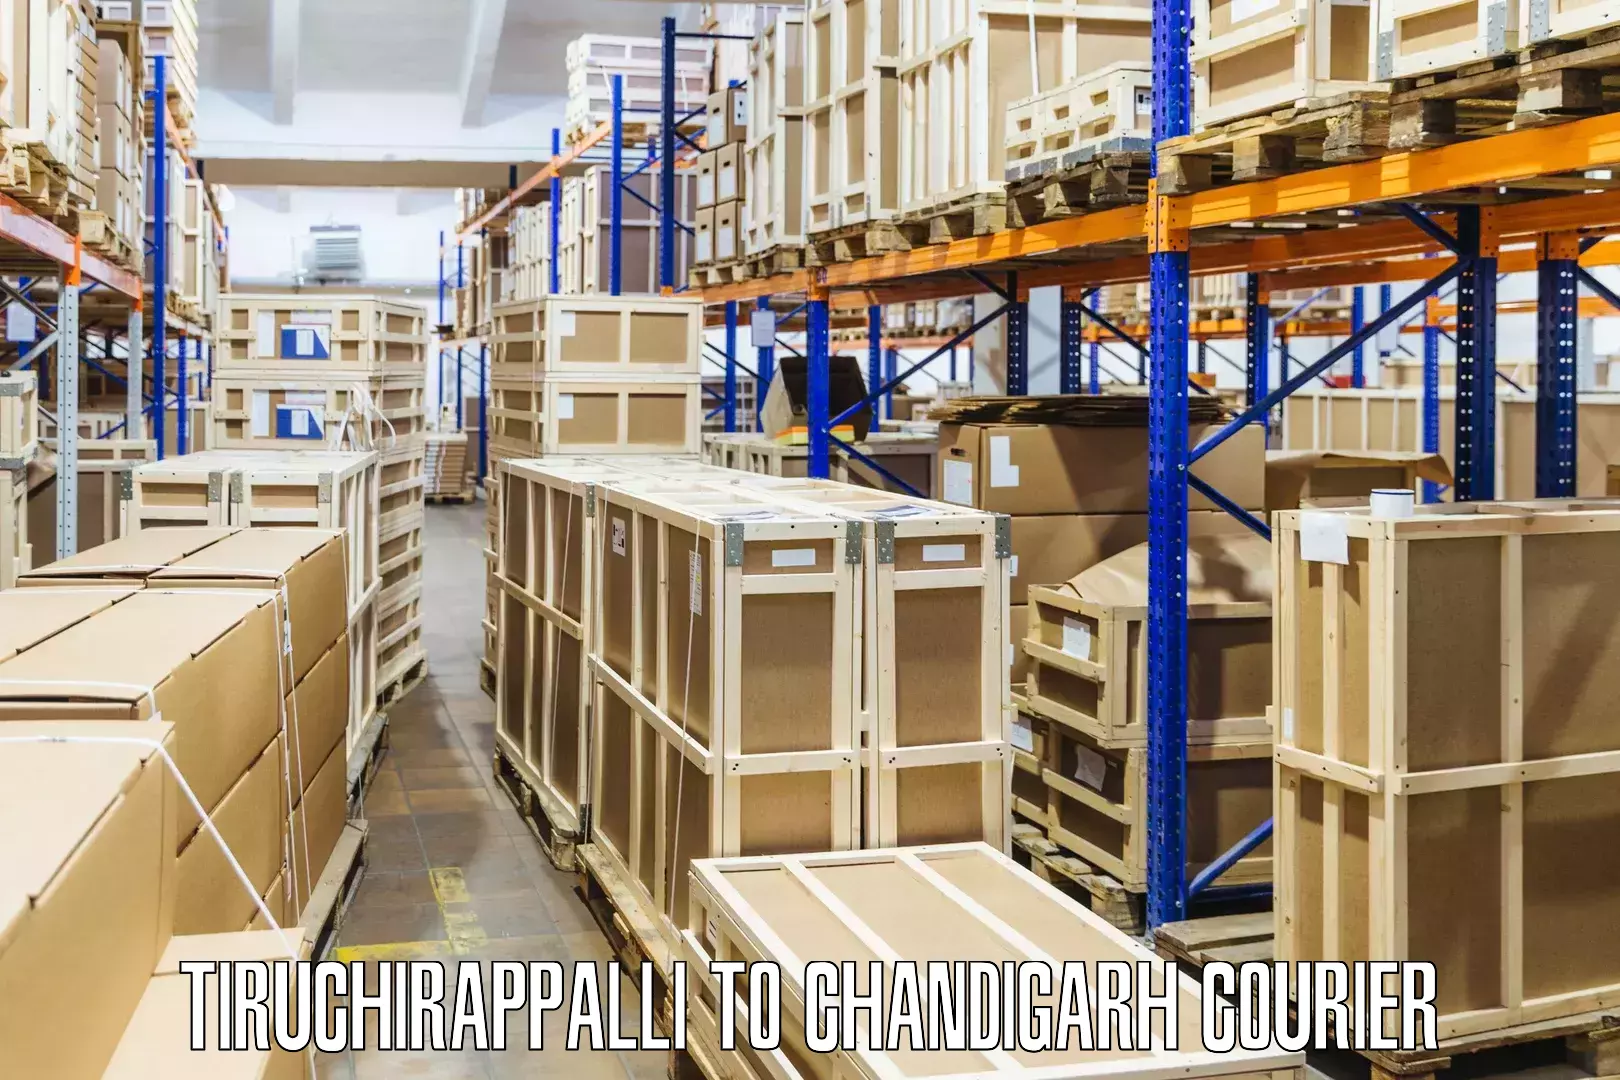 Next-generation courier services Tiruchirappalli to Chandigarh